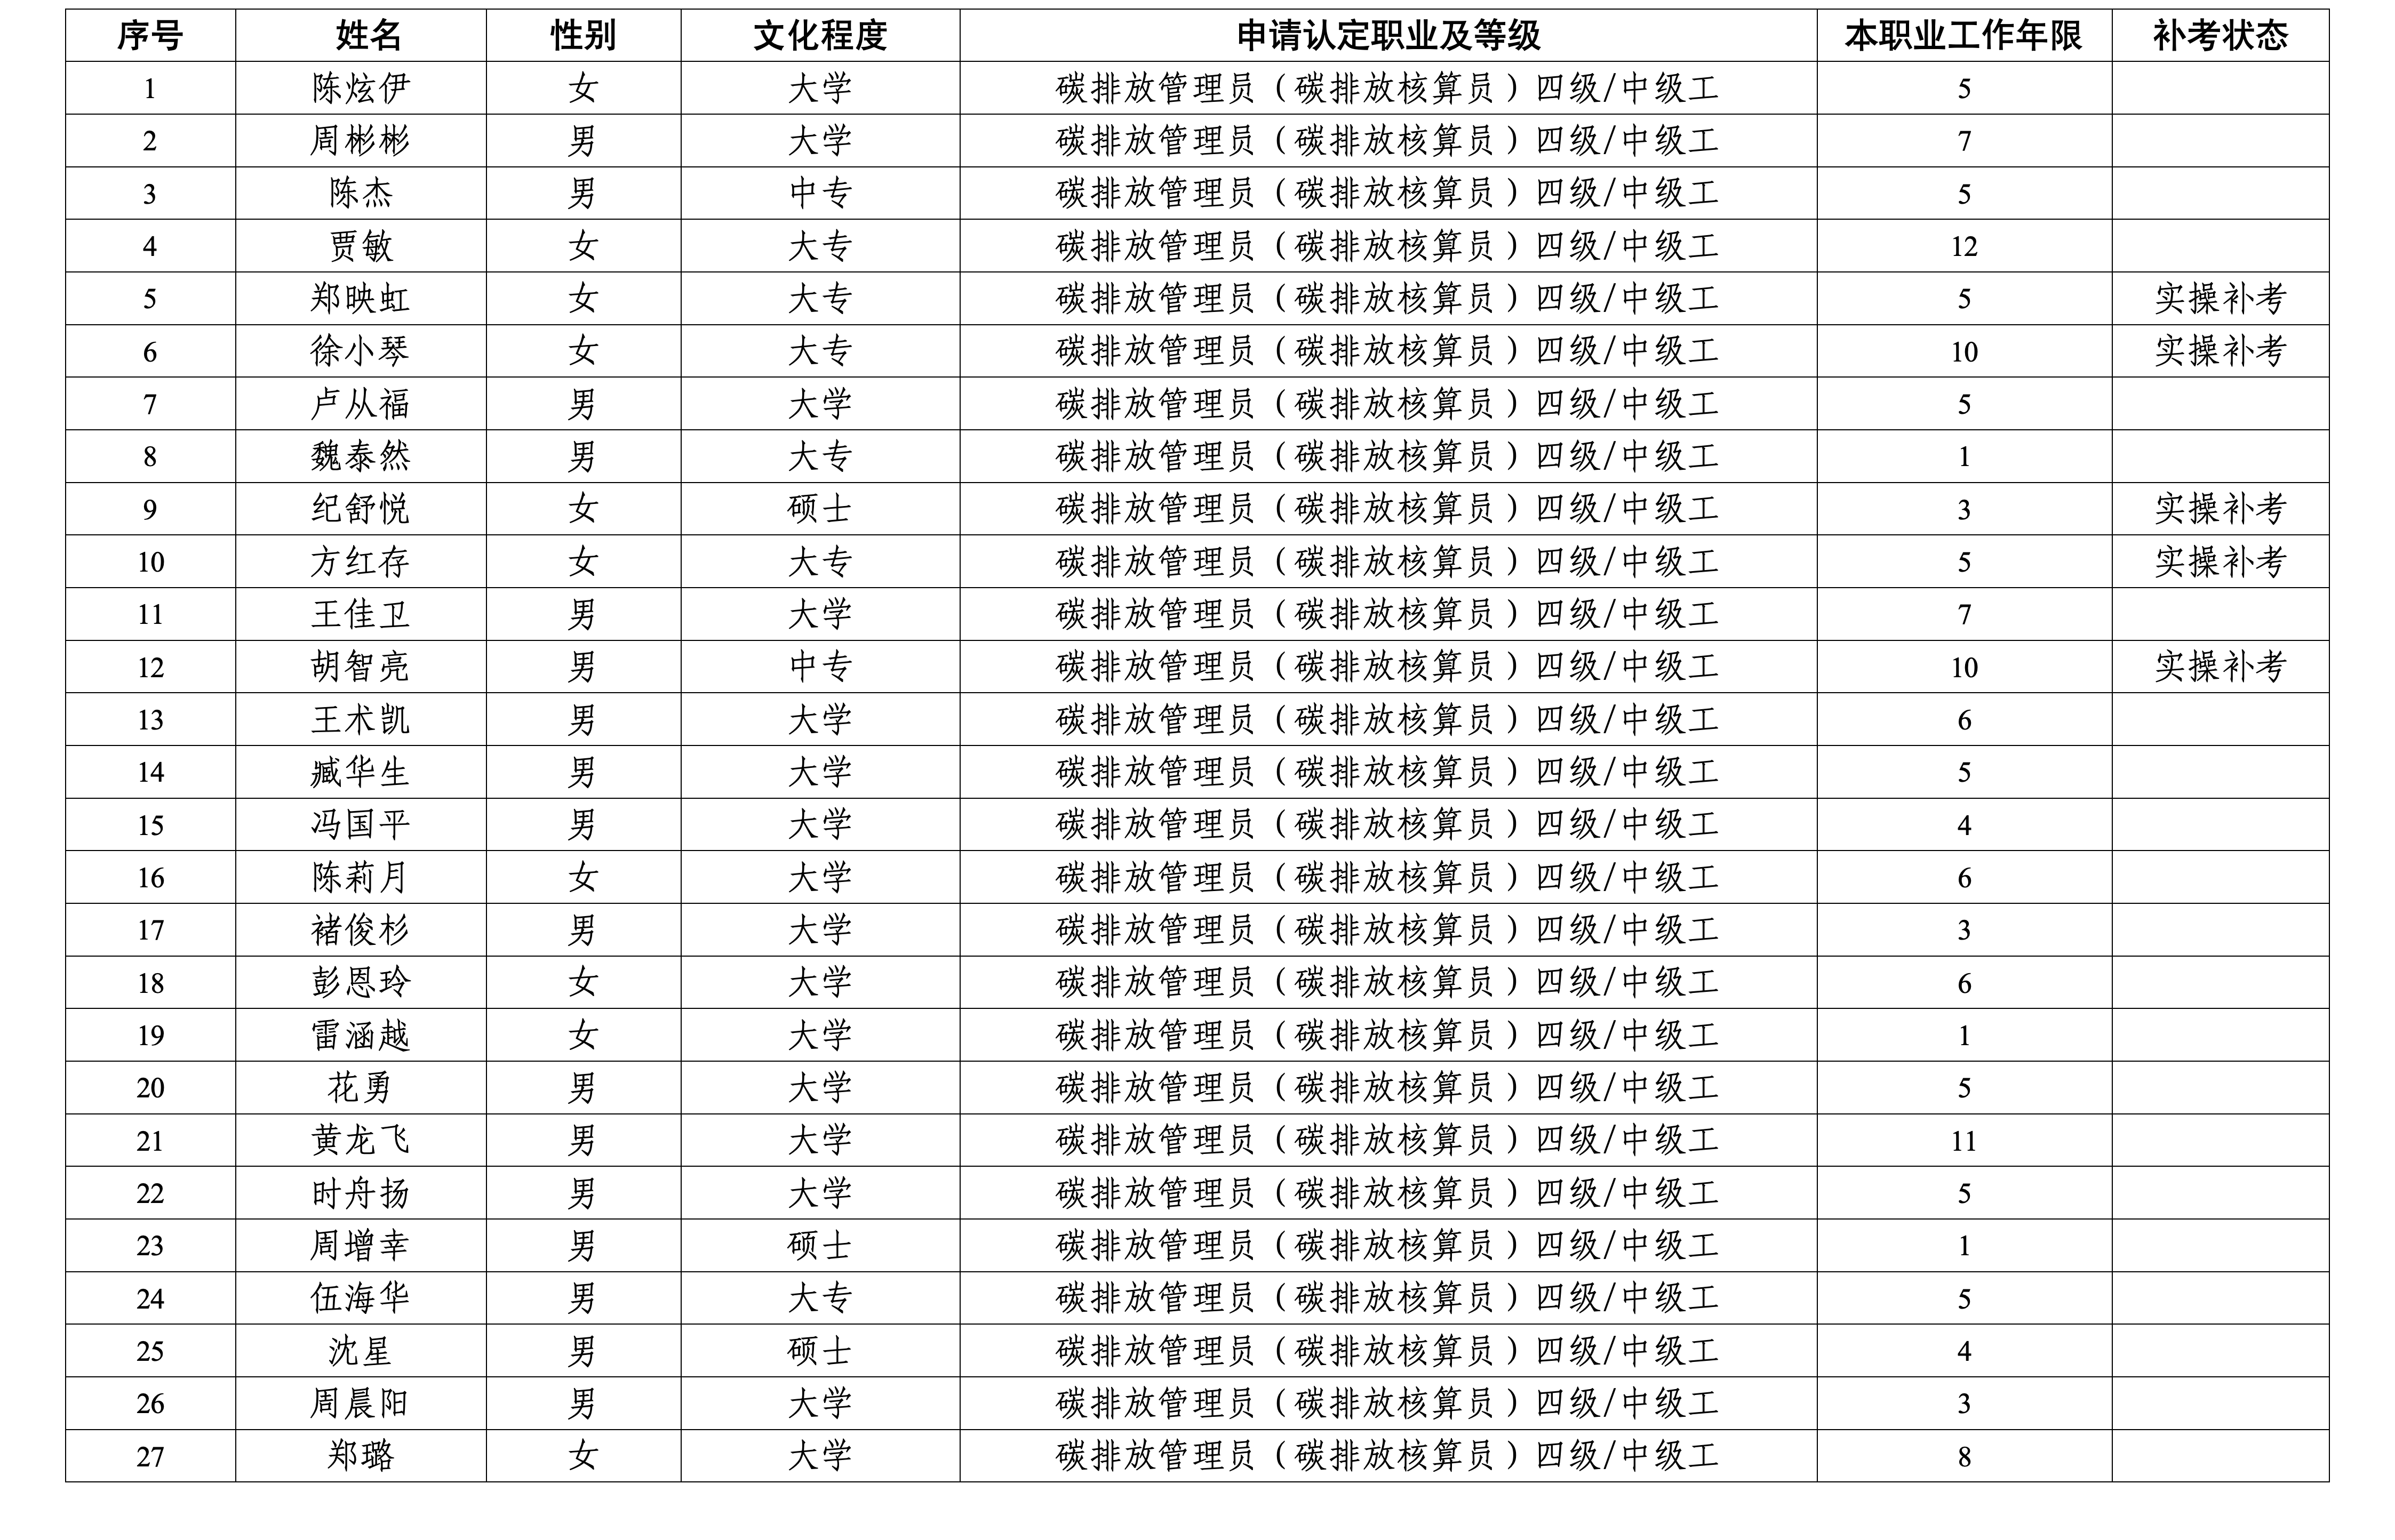 附件_6月考生报名信息公示表_02(1).png